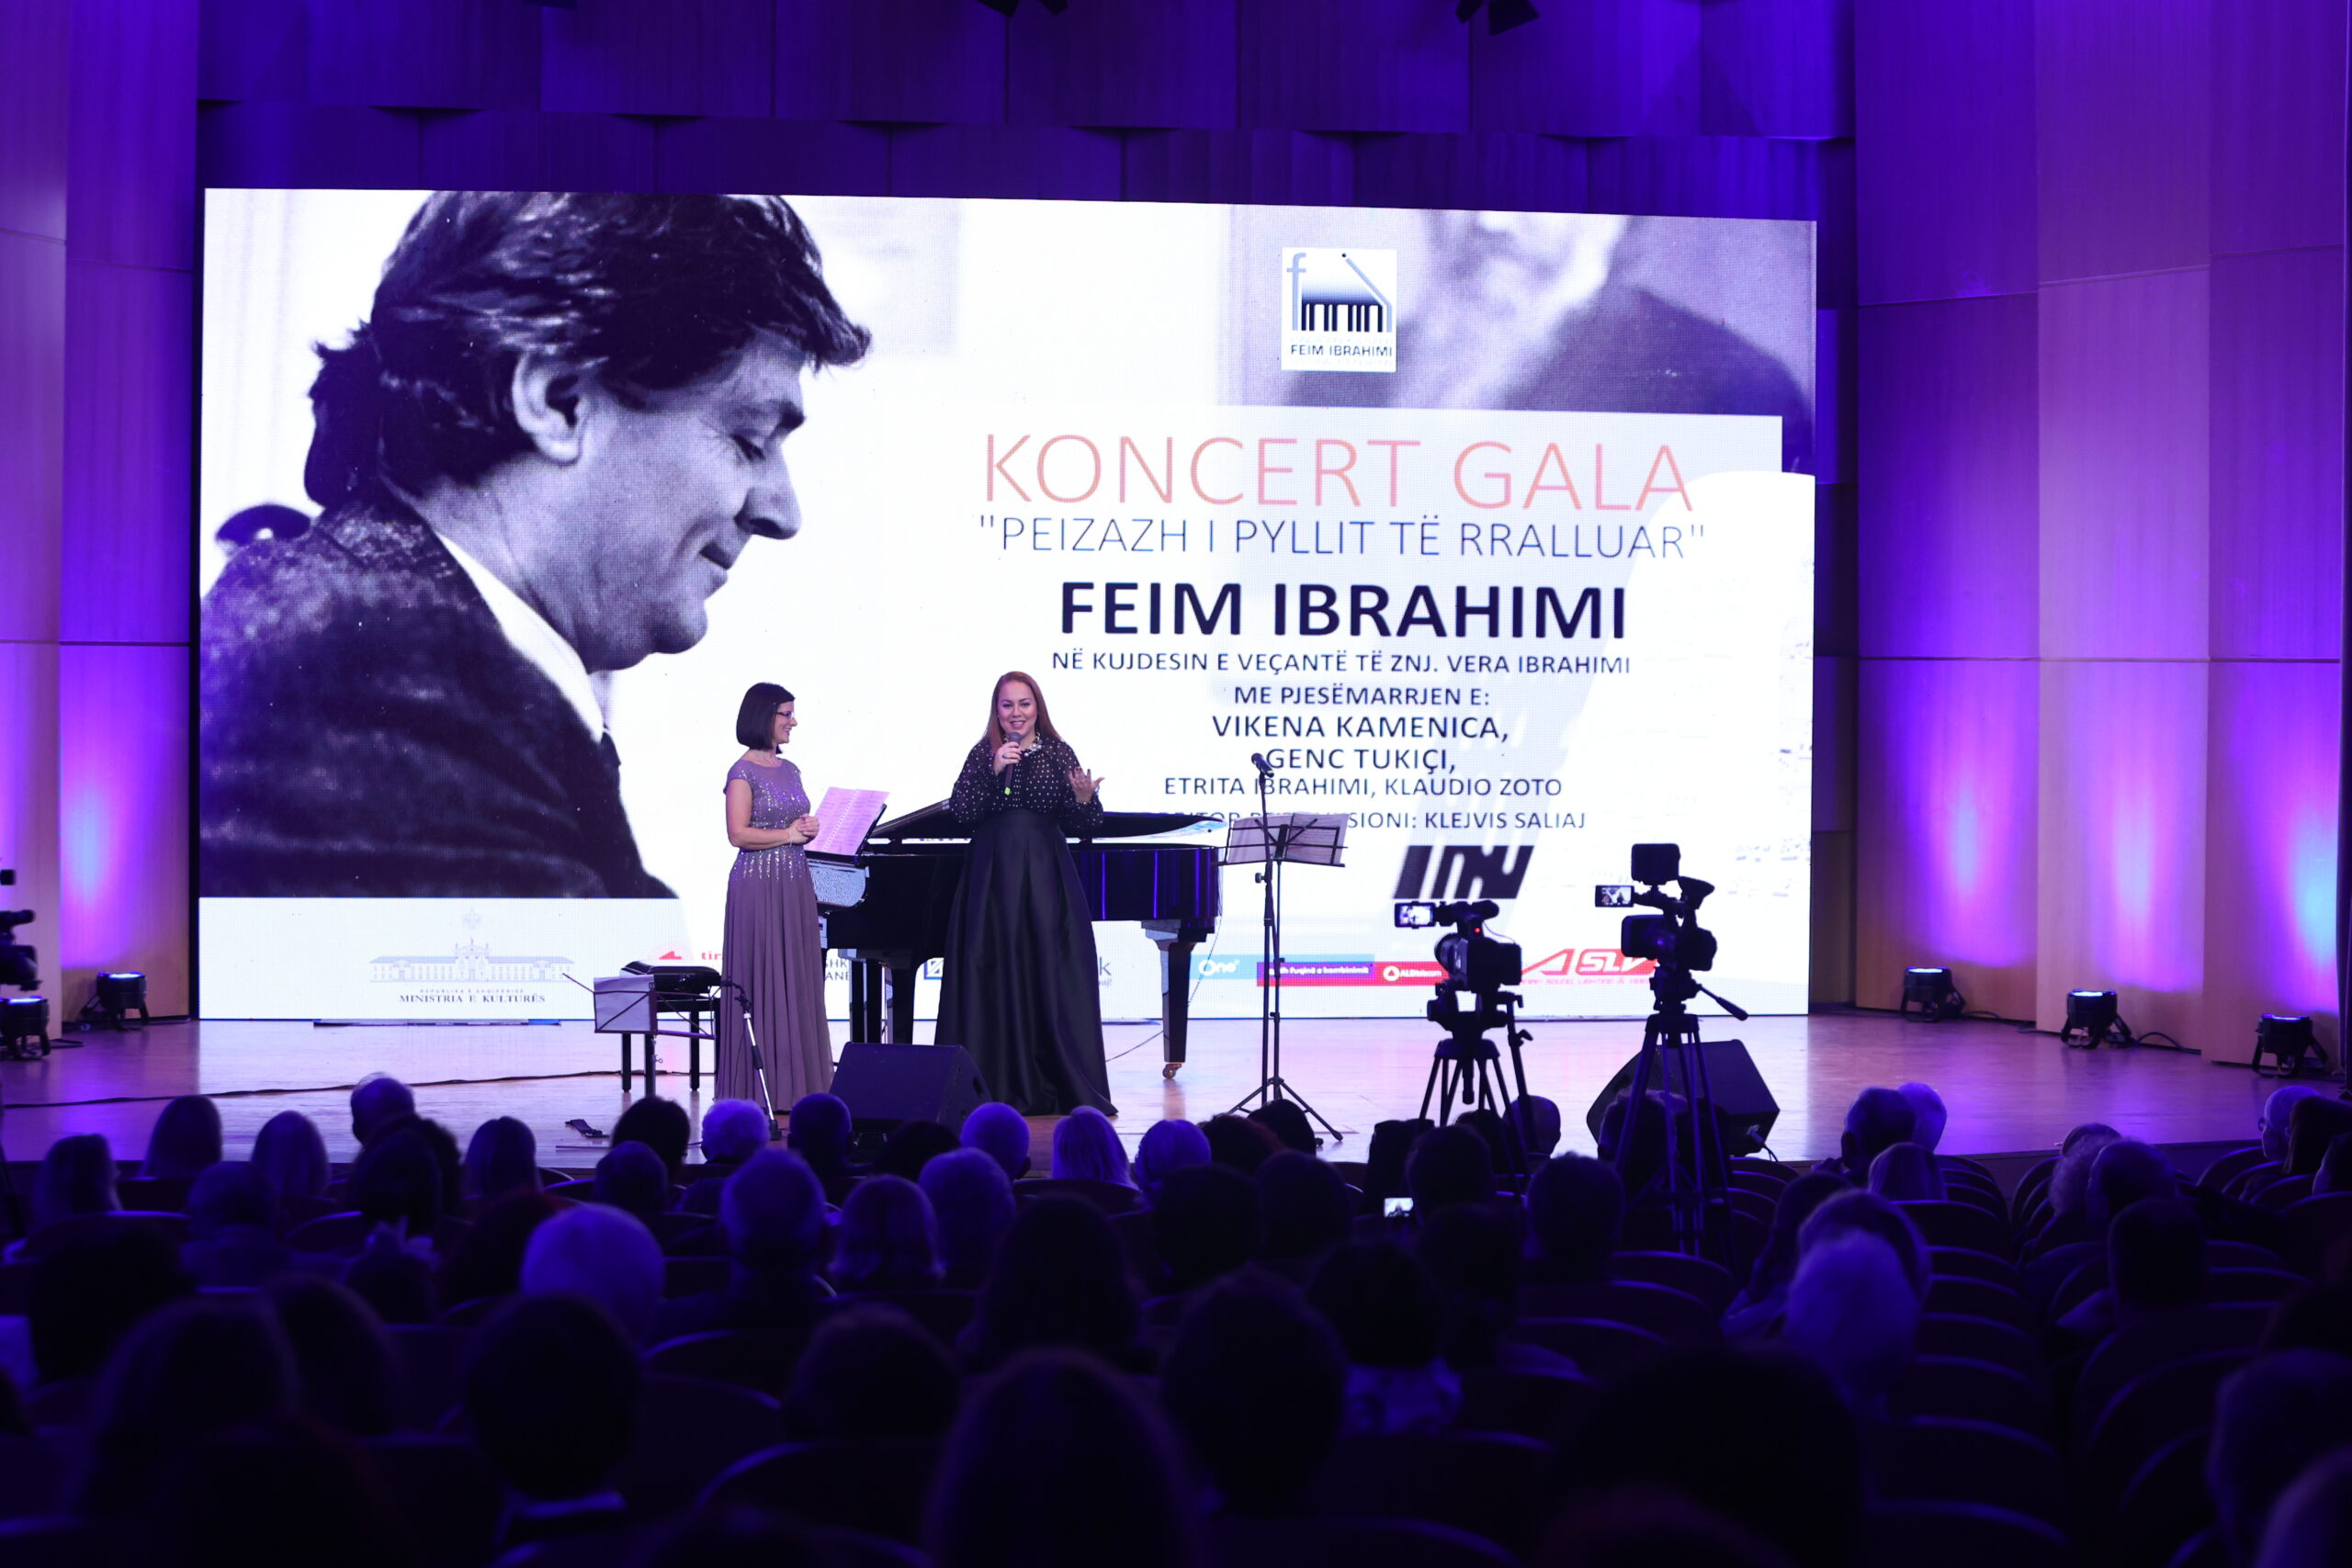 Romancat vokale dhe instrumentale të Feim Ibrahimit vijnë përmes një koncerti gala, mbështur nga ONE dhe ALBtelecom